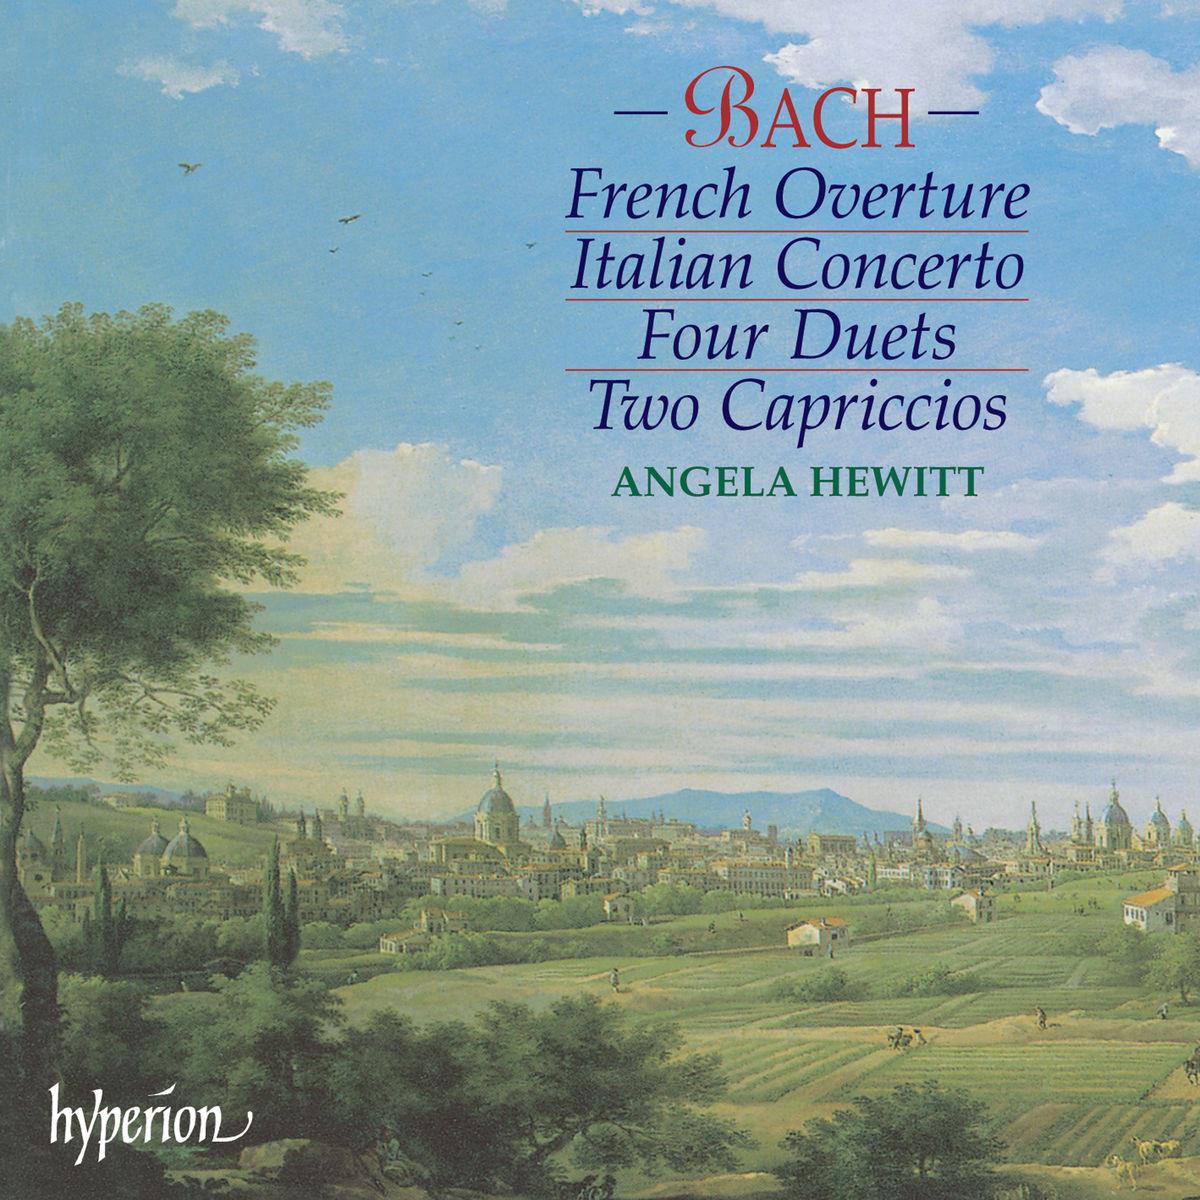 Italian Concerto in F, BWV 971 I